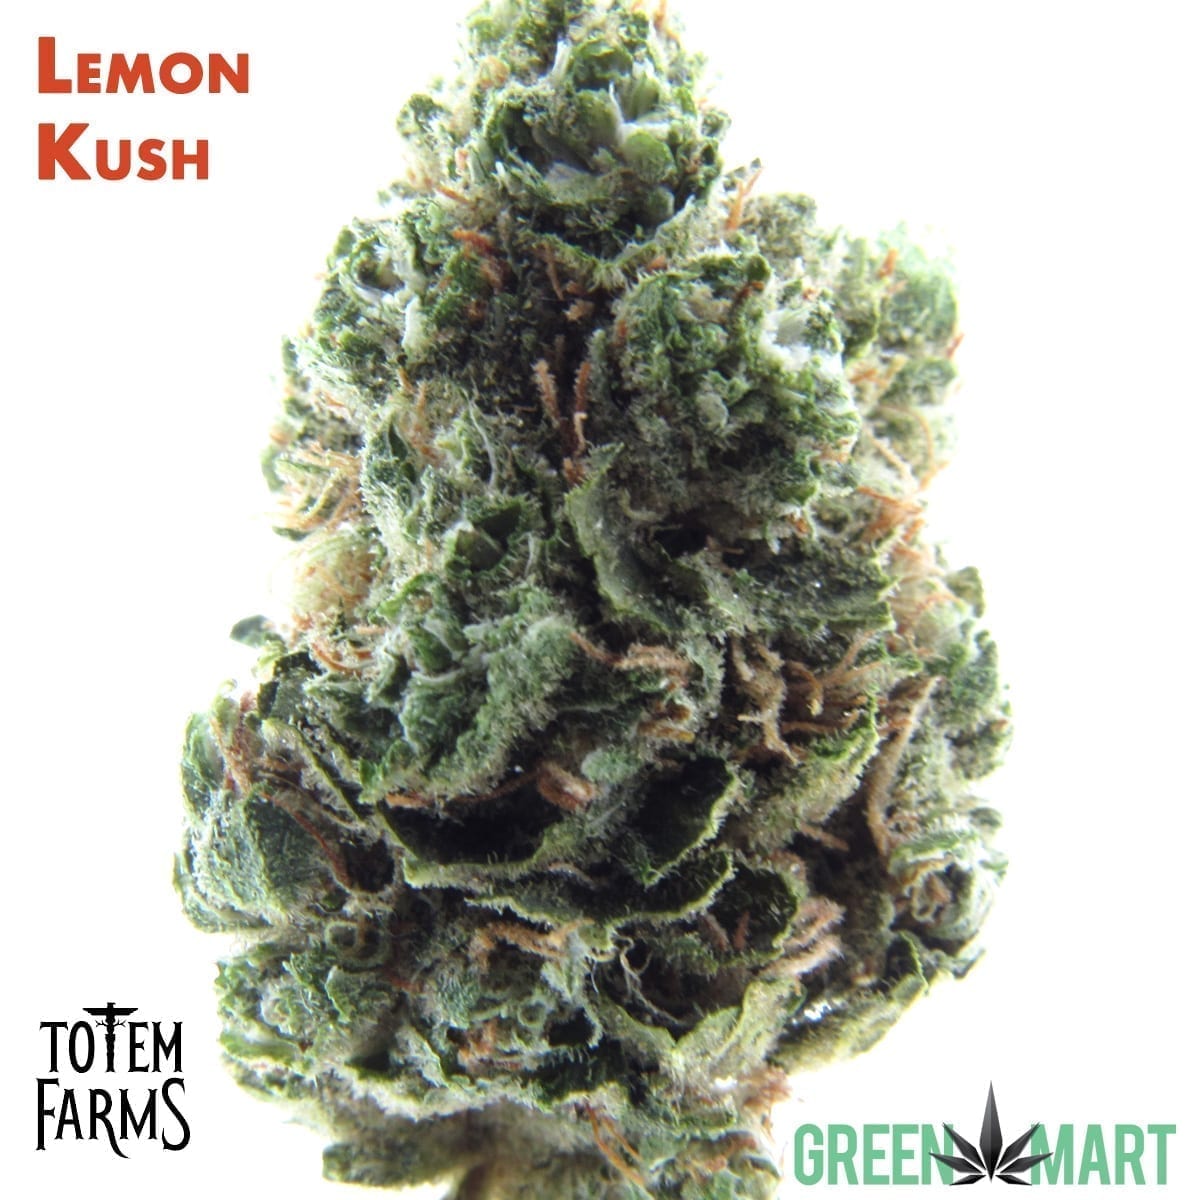 Lemon Kush by Totem Farms